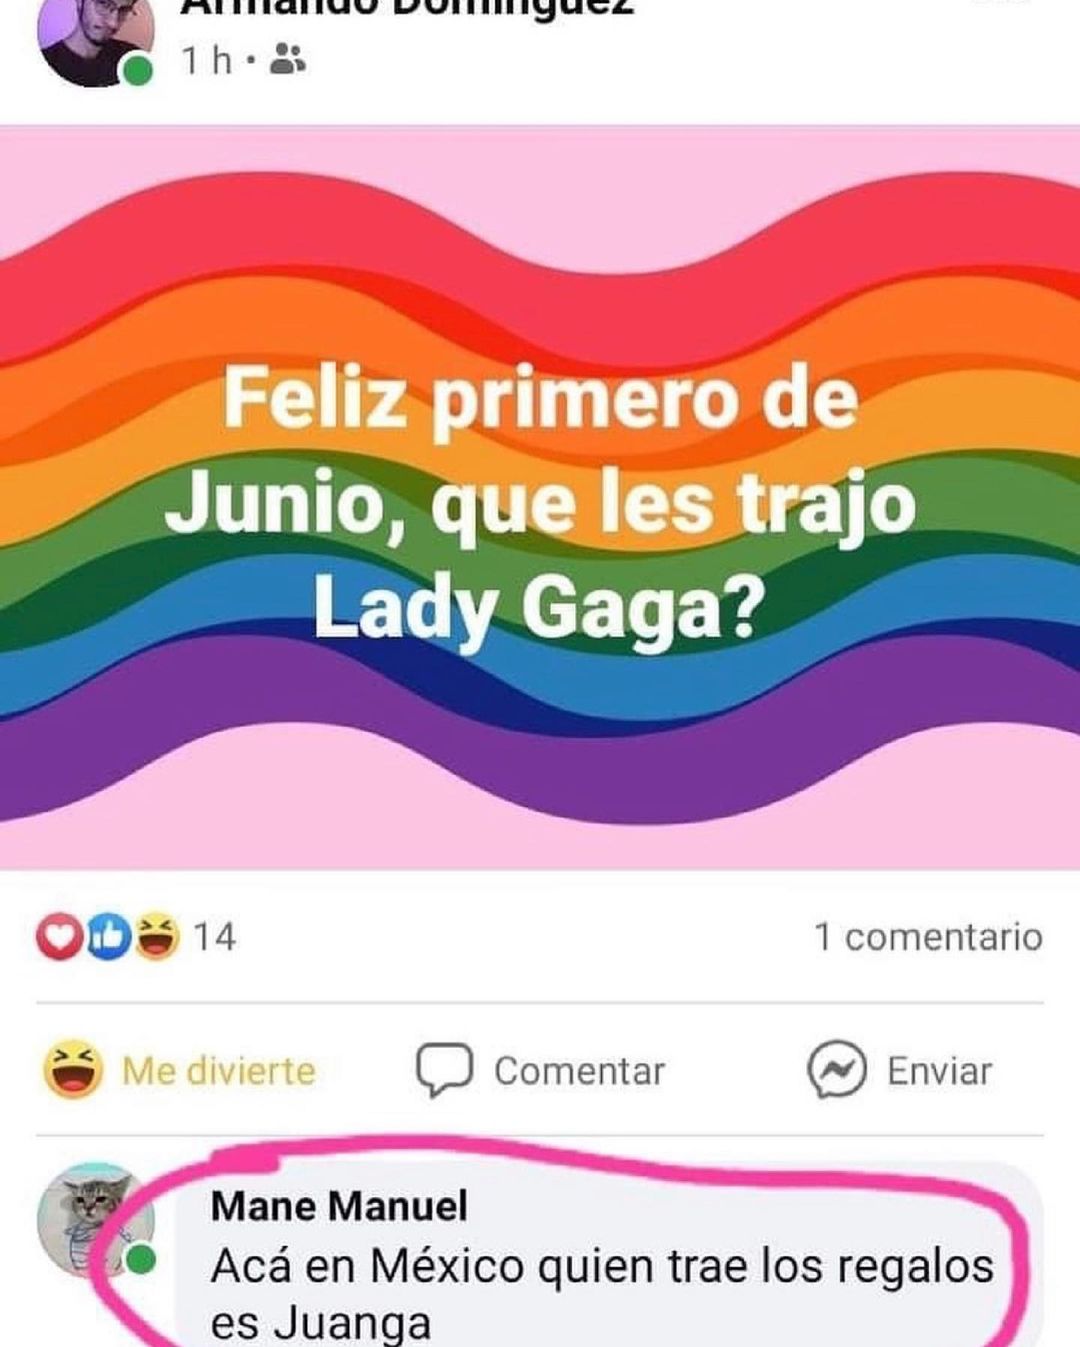 Feliz primero de Junio, que les trajo Lady Gaga?  Acá en México quien trae los regalos es Juanga.